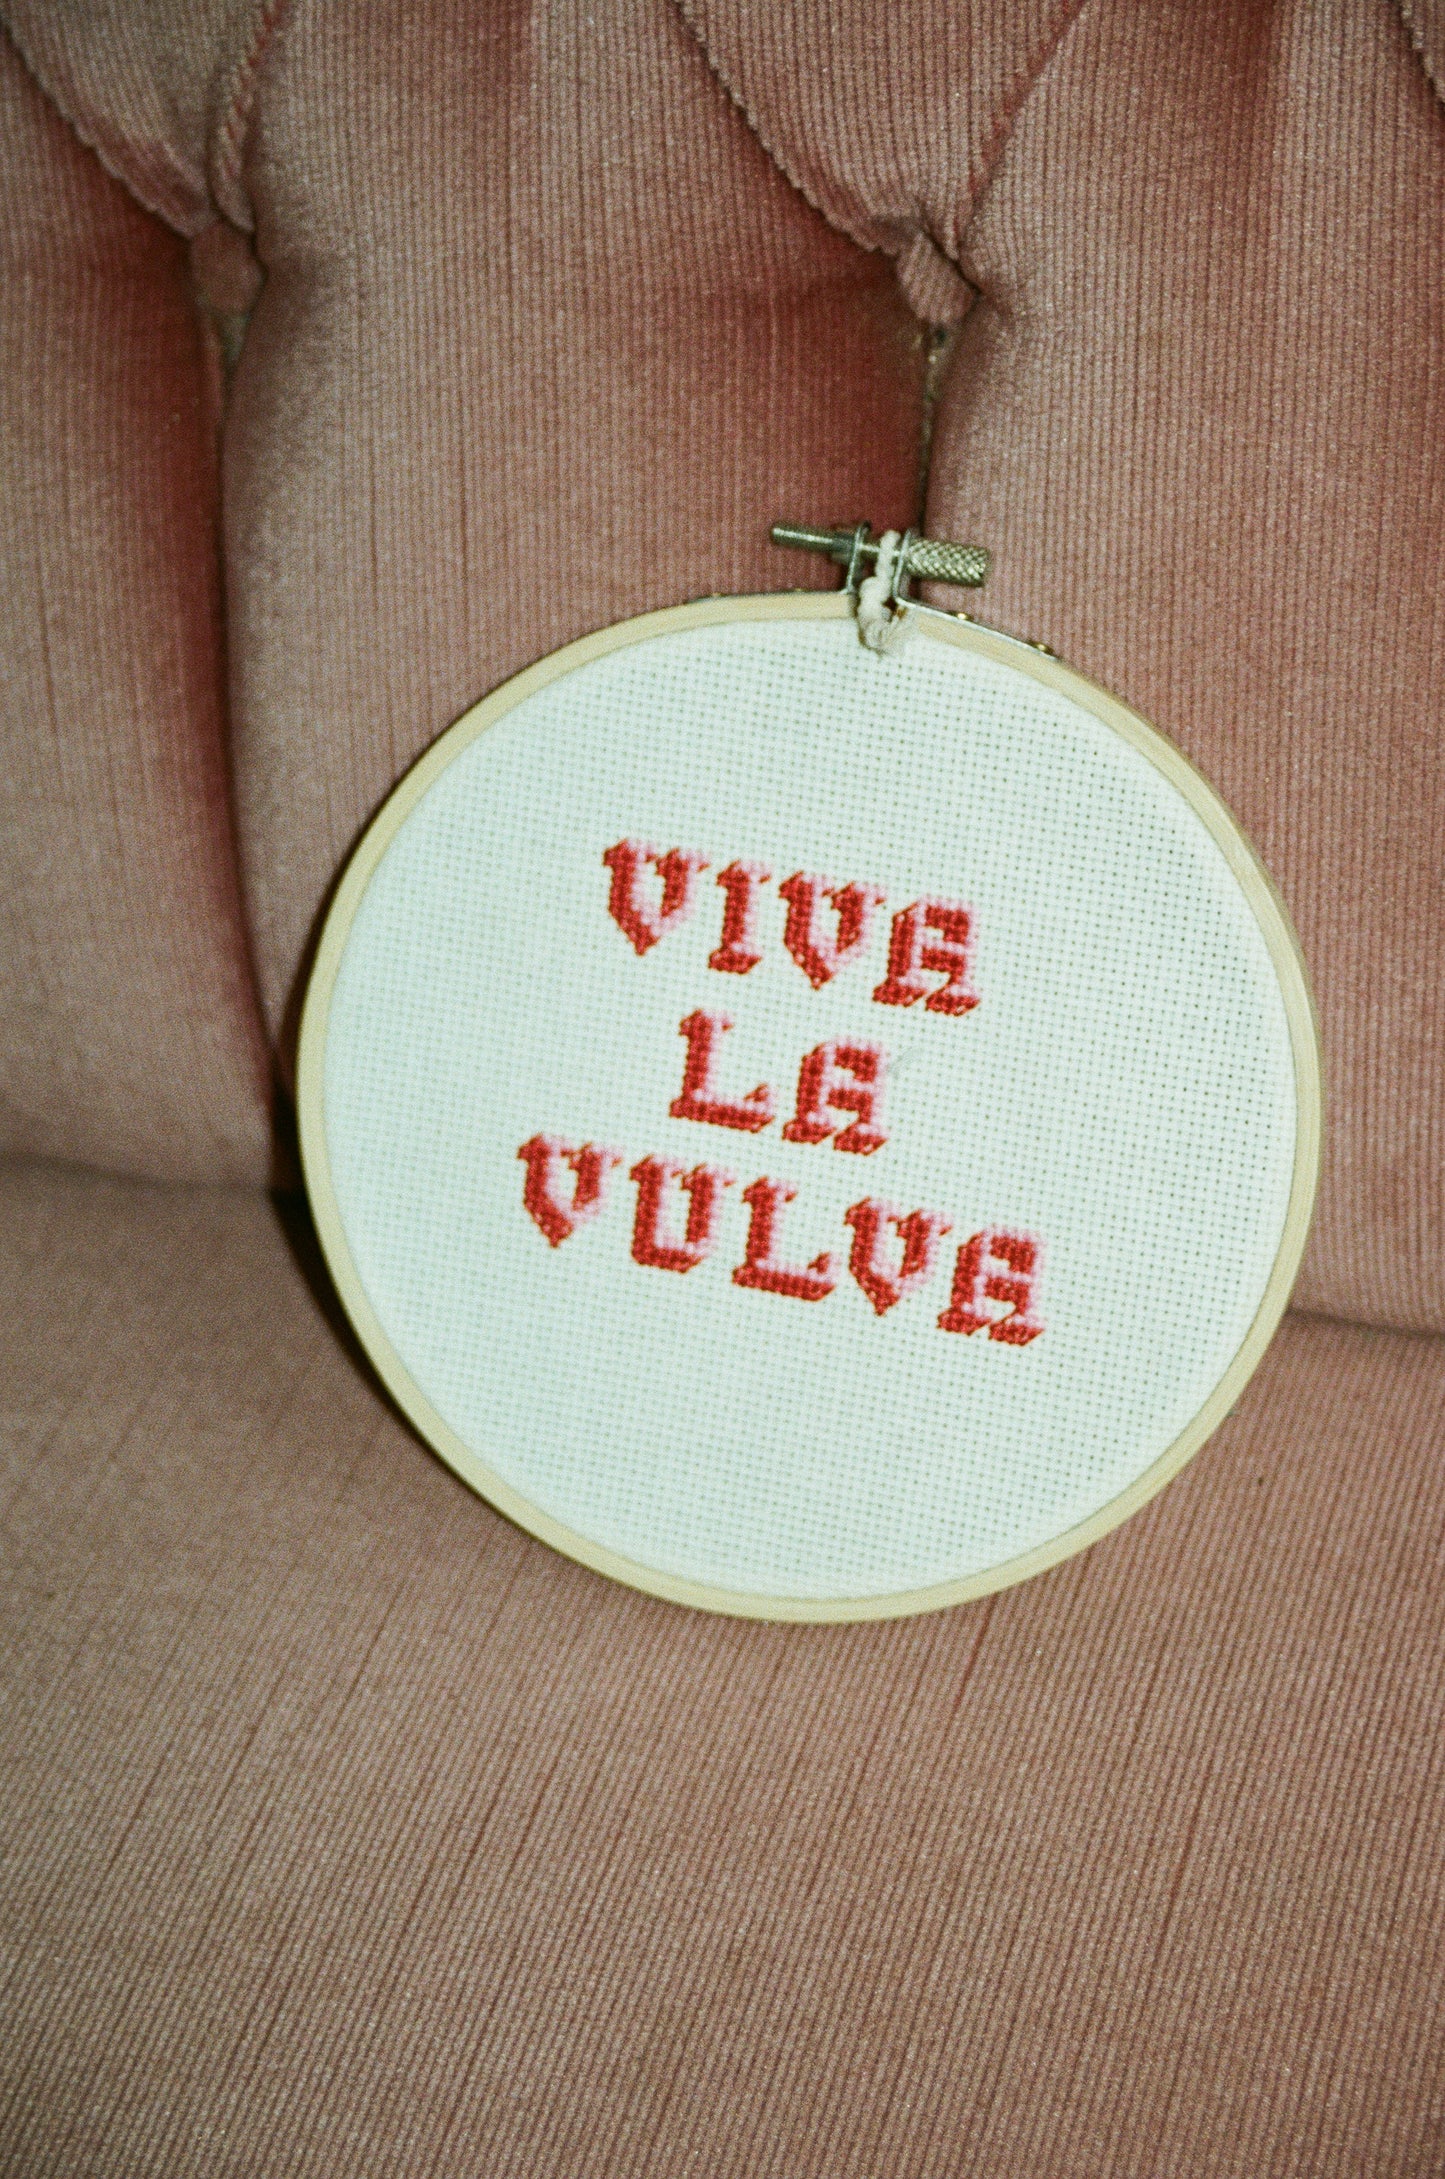 That Stitching Bitch, Viva La Vulva